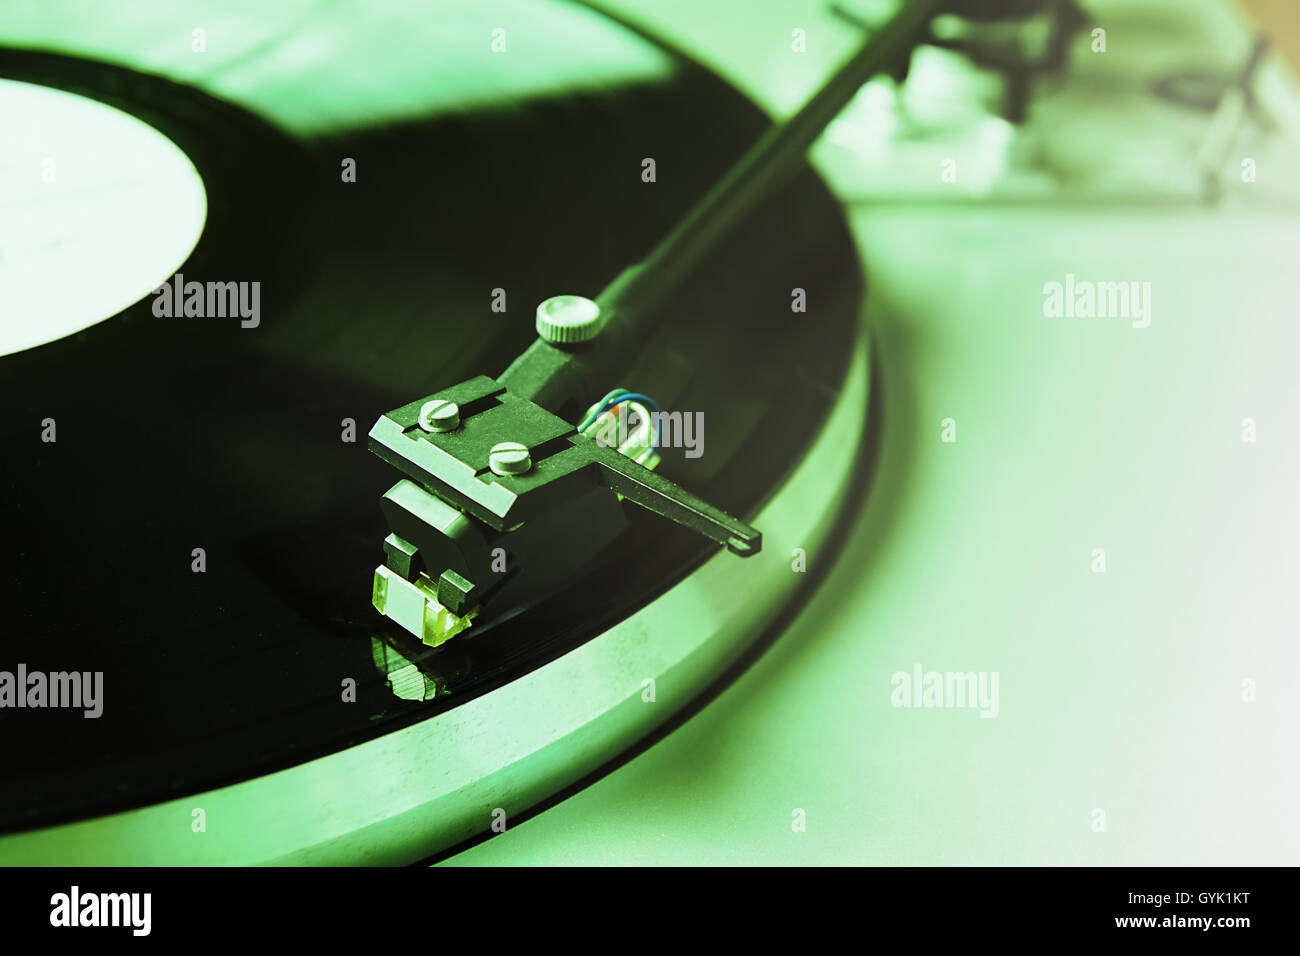 Tavola girevole la riproduzione di disco in vinile con musica. Home sistema hi-fi per gli appassionati di audio o hipster. Colore verde Foto Stock